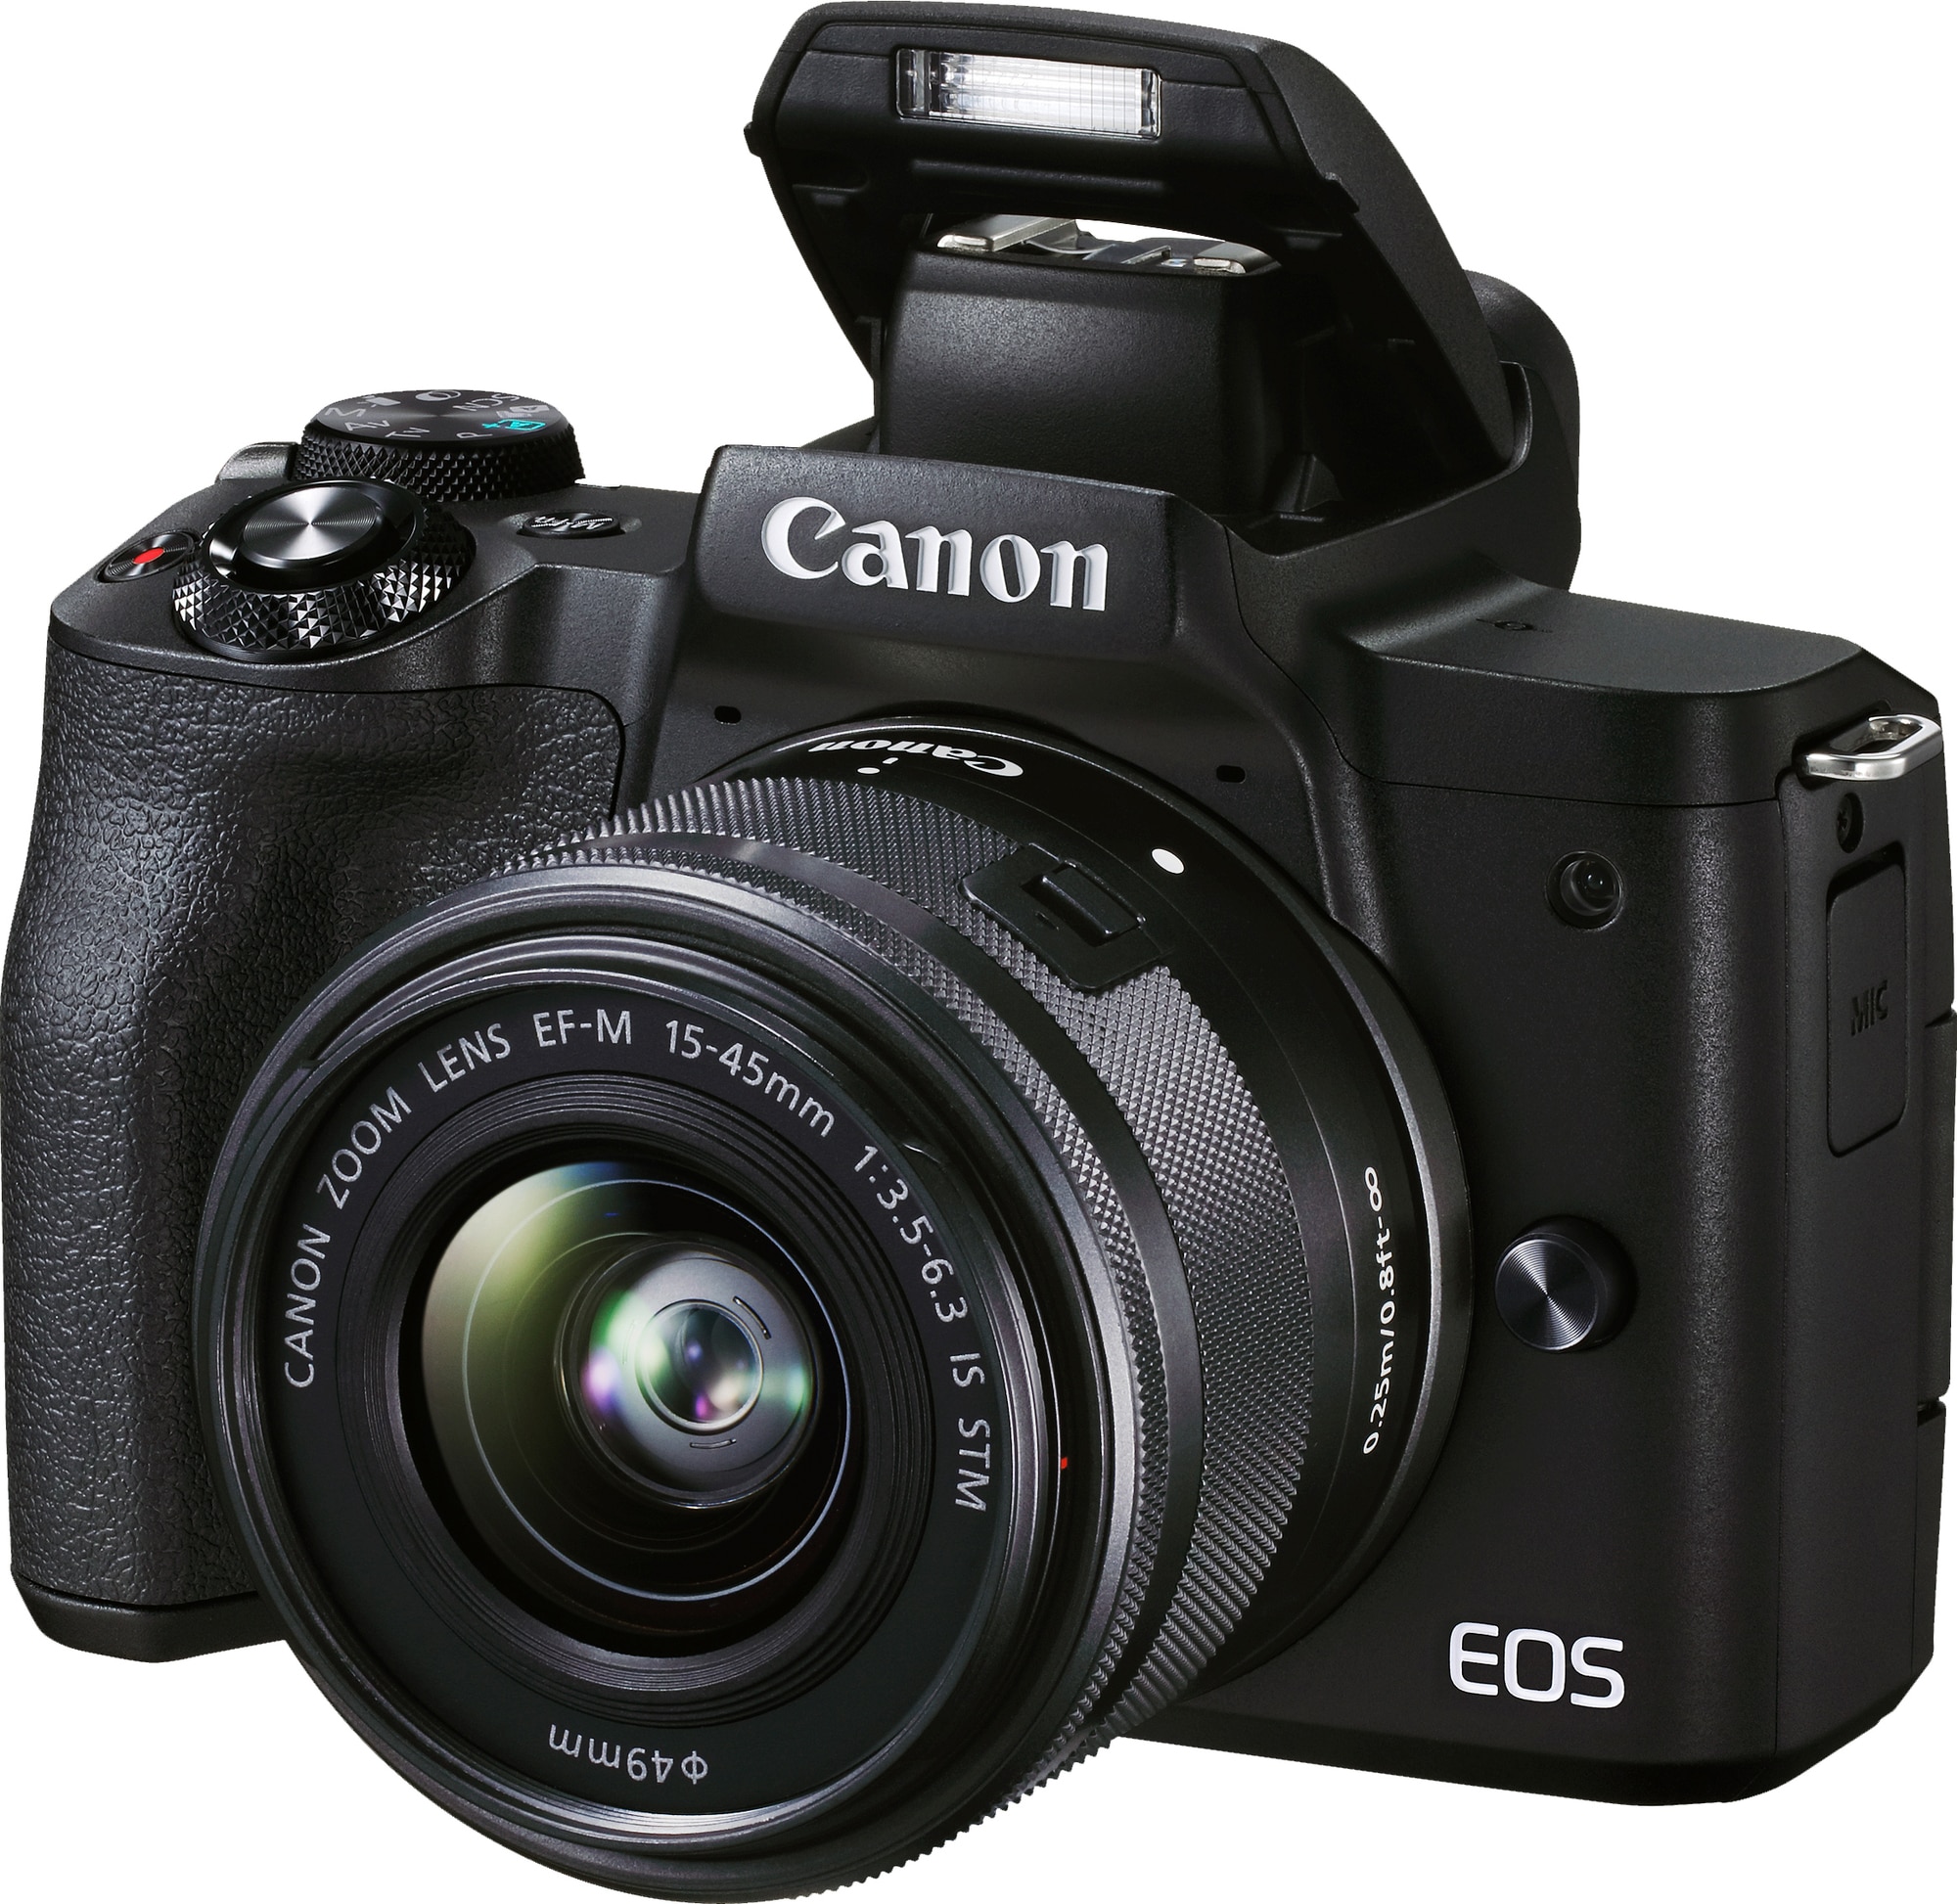 Canon EOS M50 kompakti järjestelmäkamera + 15-45mm -objektiivi - Gigantti  verkkokauppa